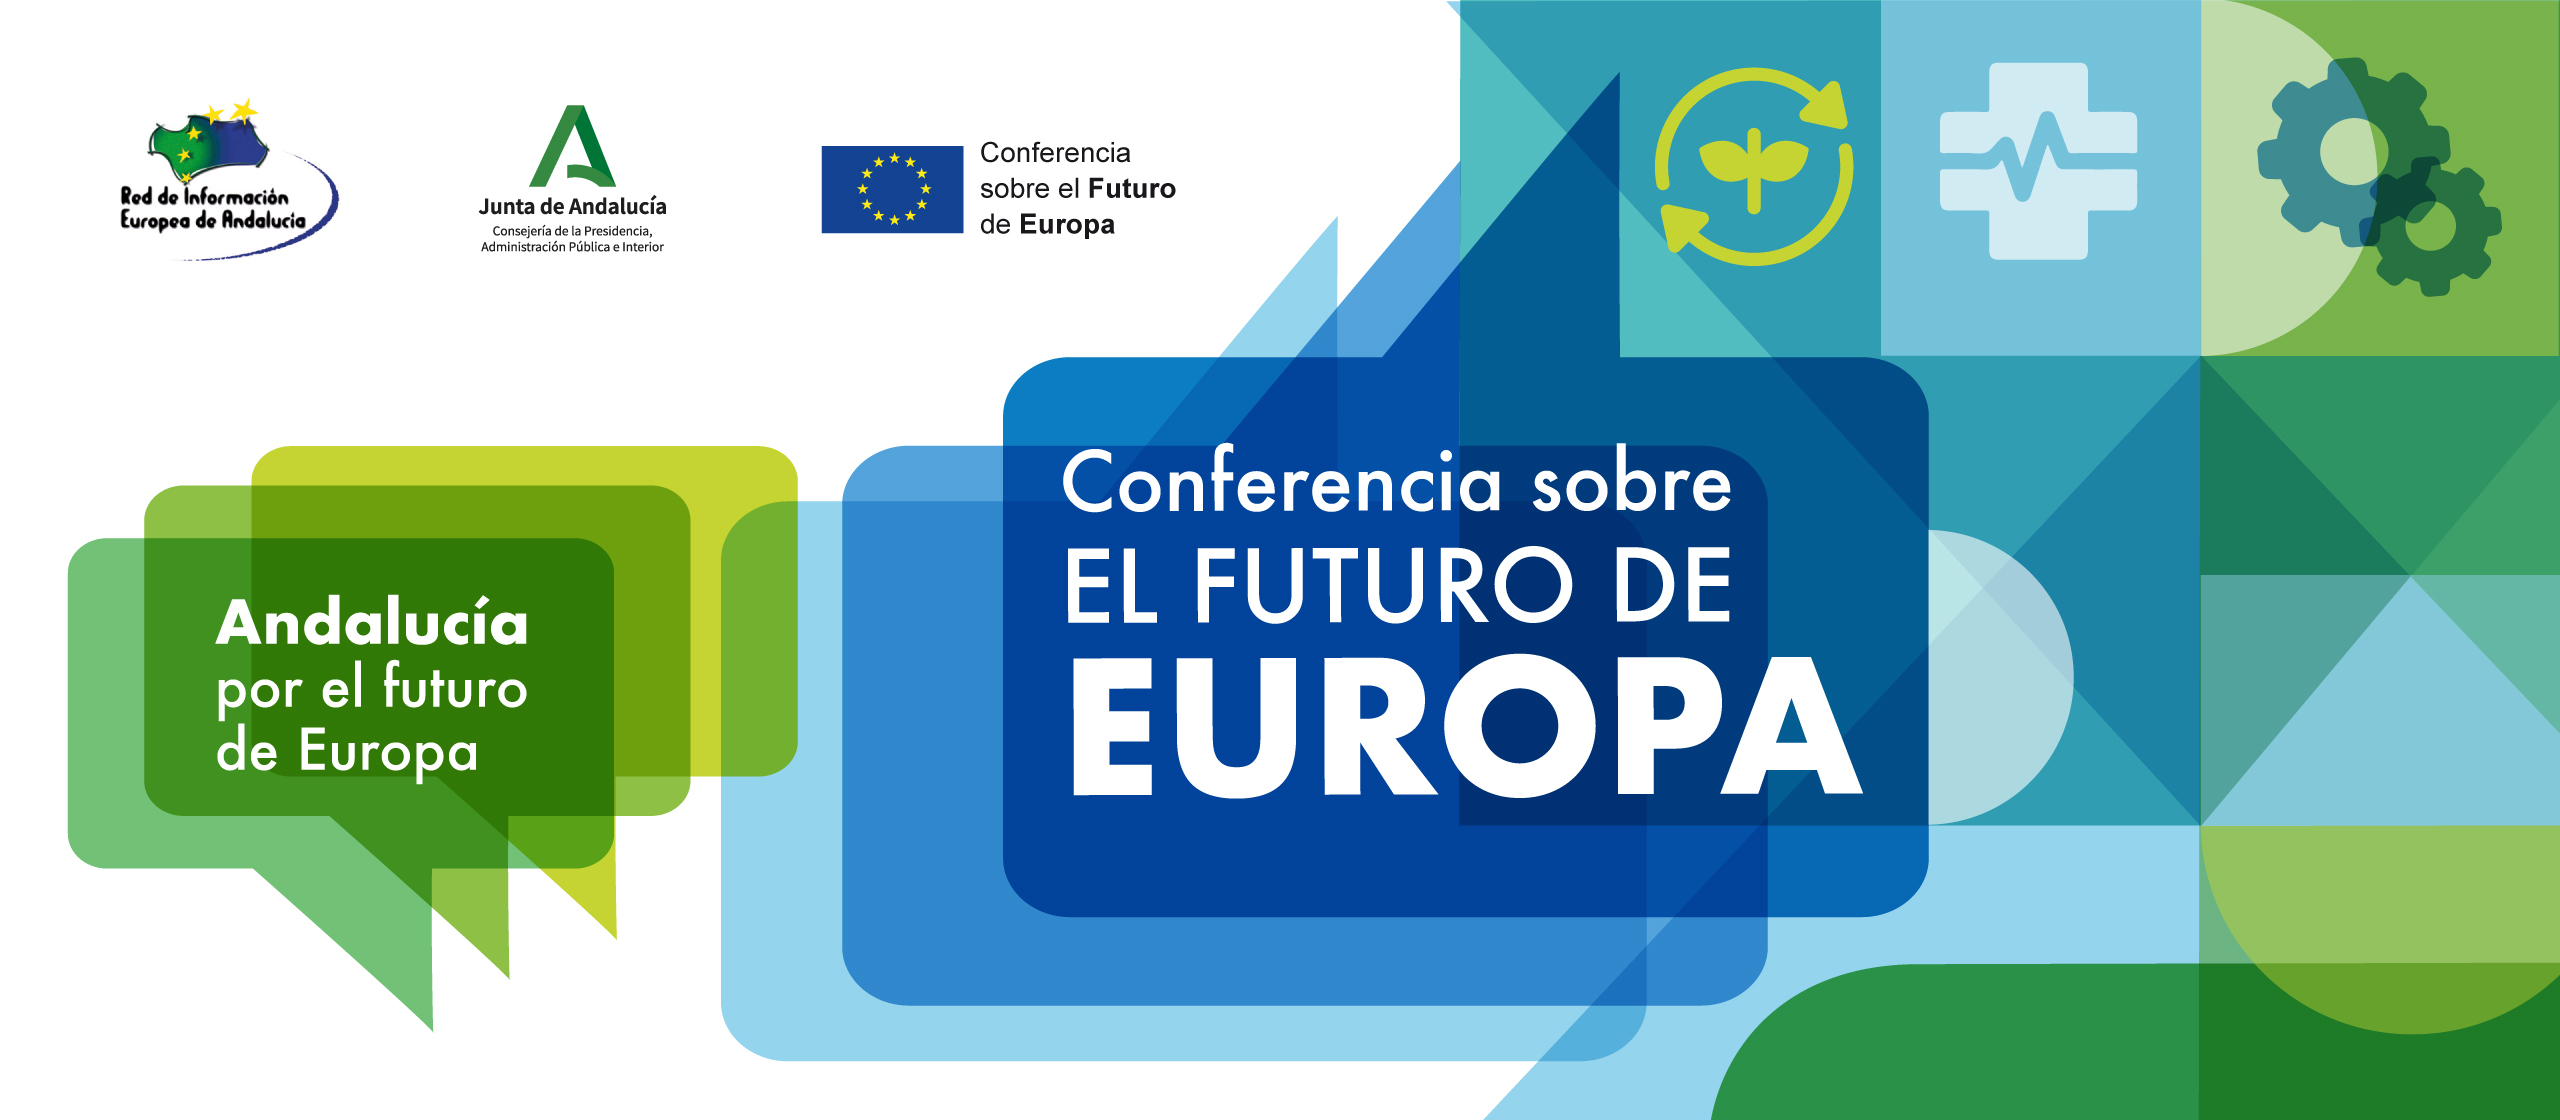 La “Conferencia sobre el Futuro de Europa” se celebra en Granada organizada por la Junta de Andalucía y la UGR